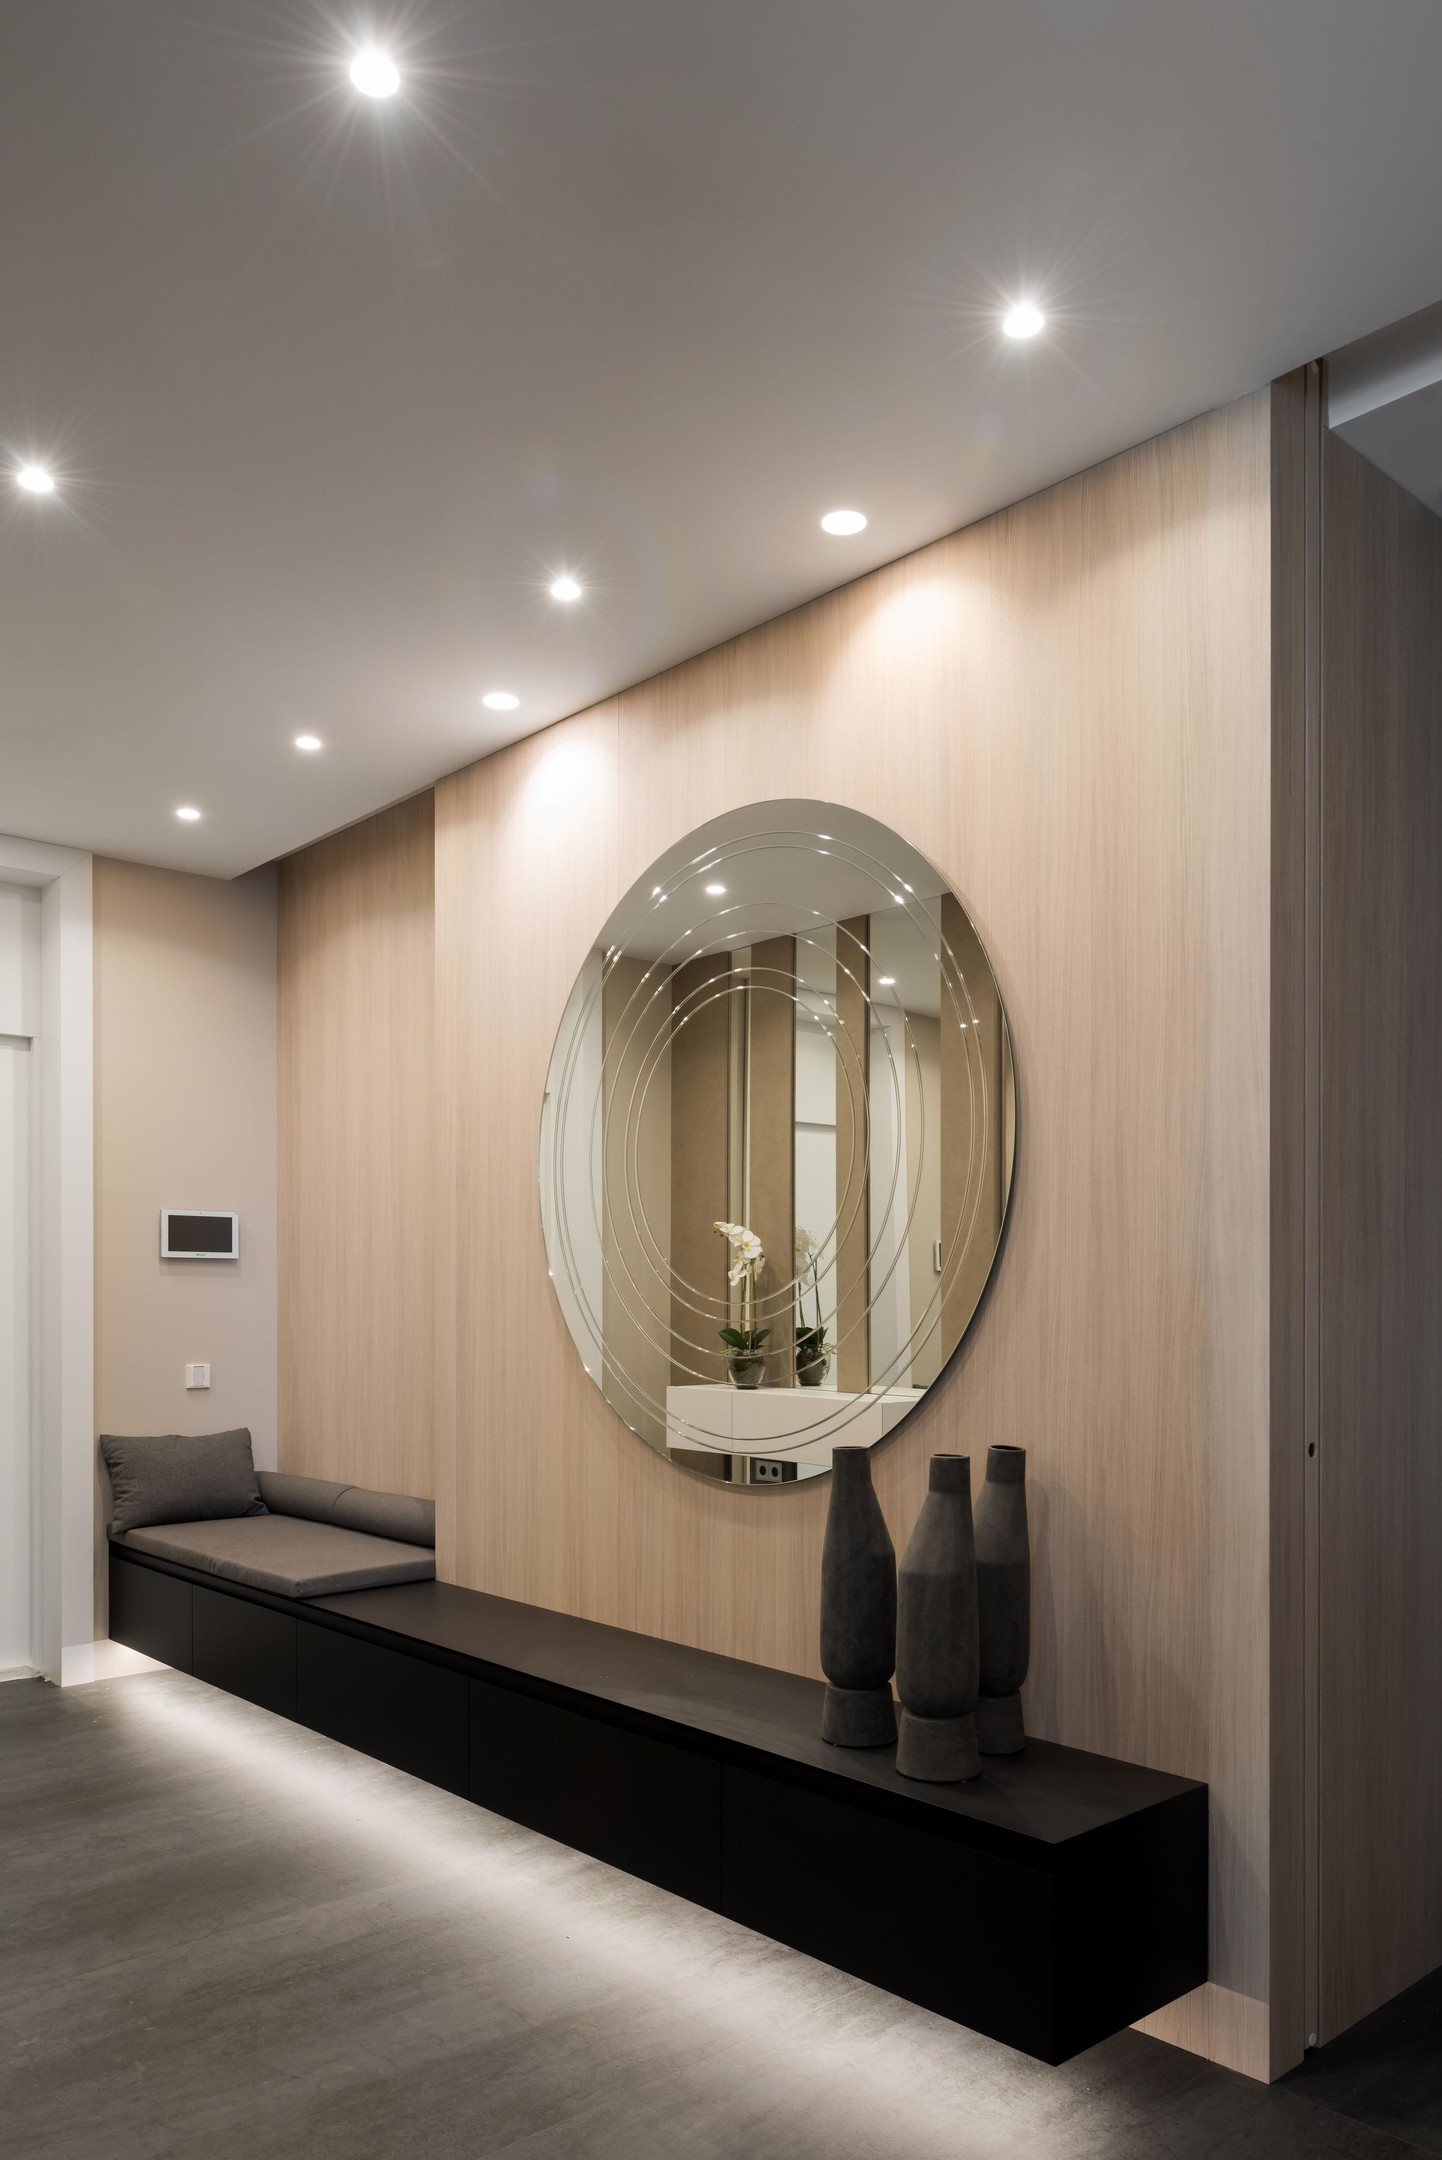 Hành lang tuyệt đẹp của căn hộ do Fedorova Architects thiết kế, với vật liệu gỗ sáng màu cùng băng ghế nghỉ chân kéo dài toàn bộ bức tường. Phía trên là tấm gương tròn cỡ lớn phản chiếu ánh sáng từ hệ thống đèn trần cho lối vào đẹp lung linh.